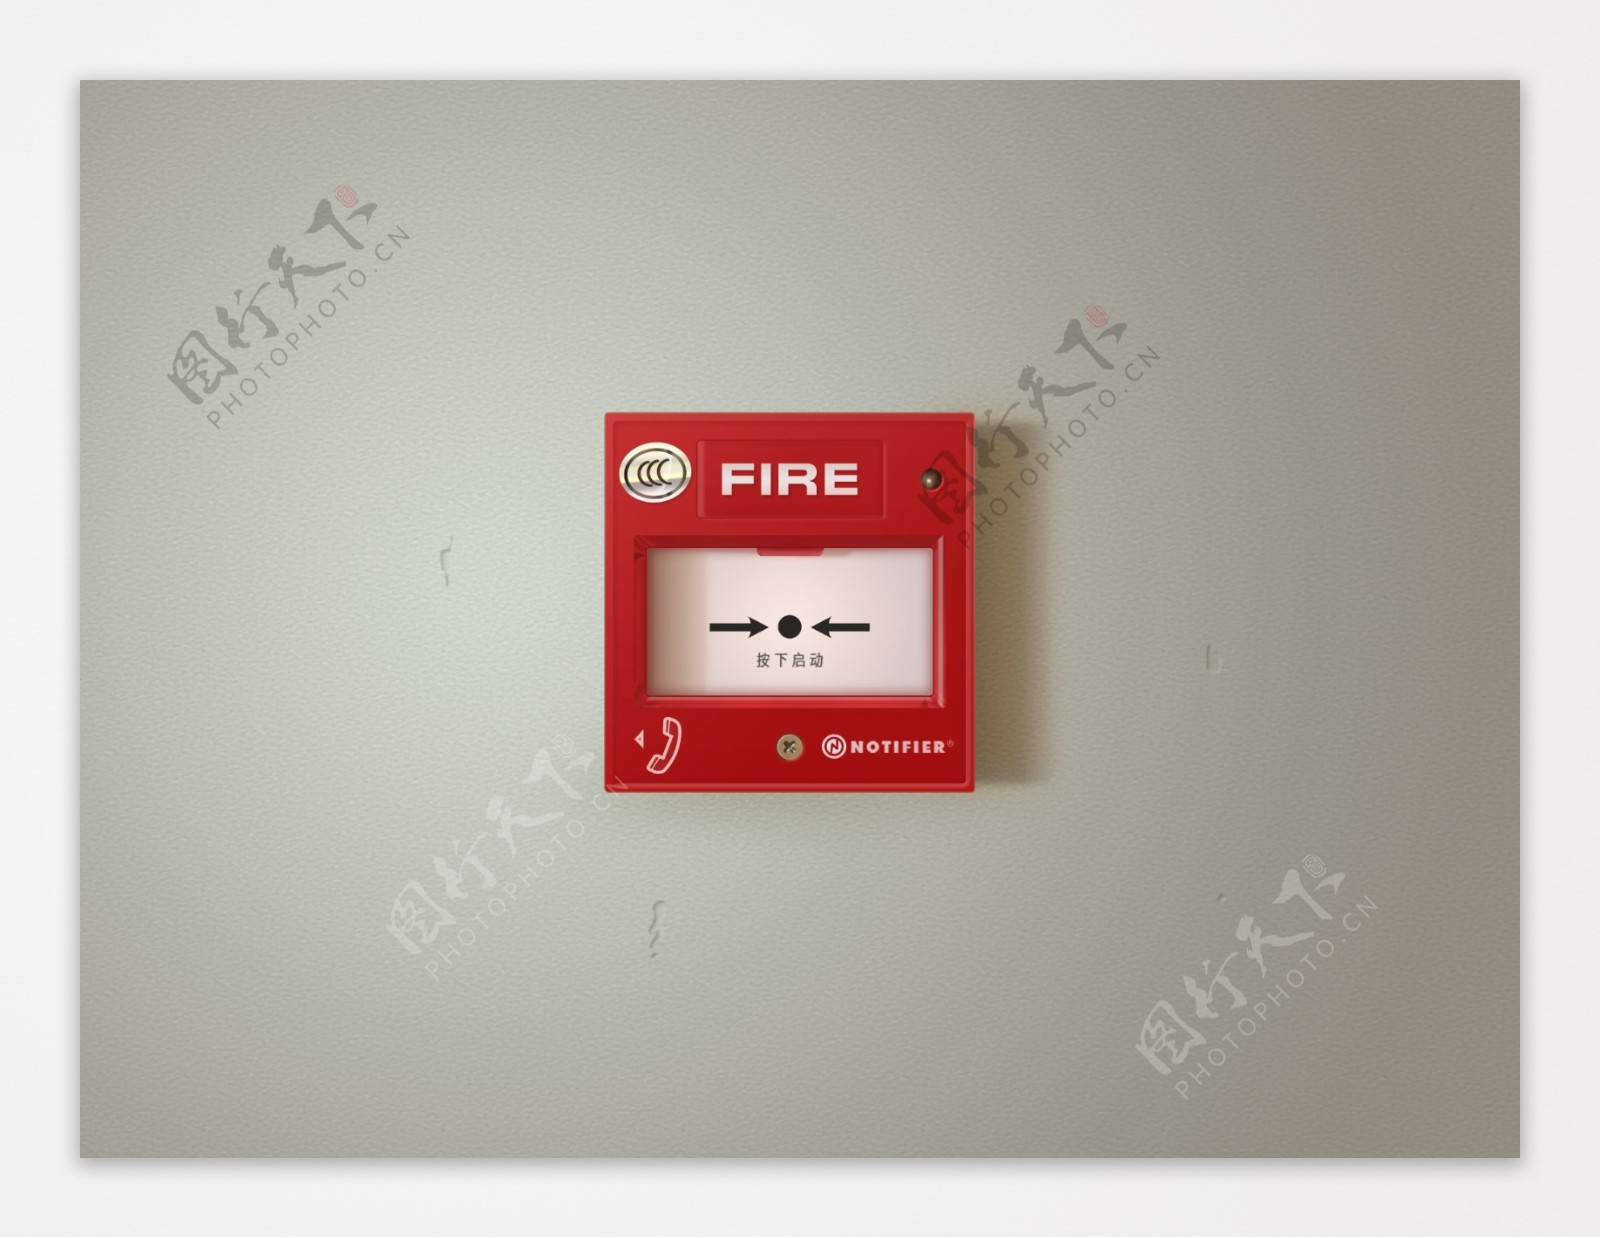 消防按钮设计图片